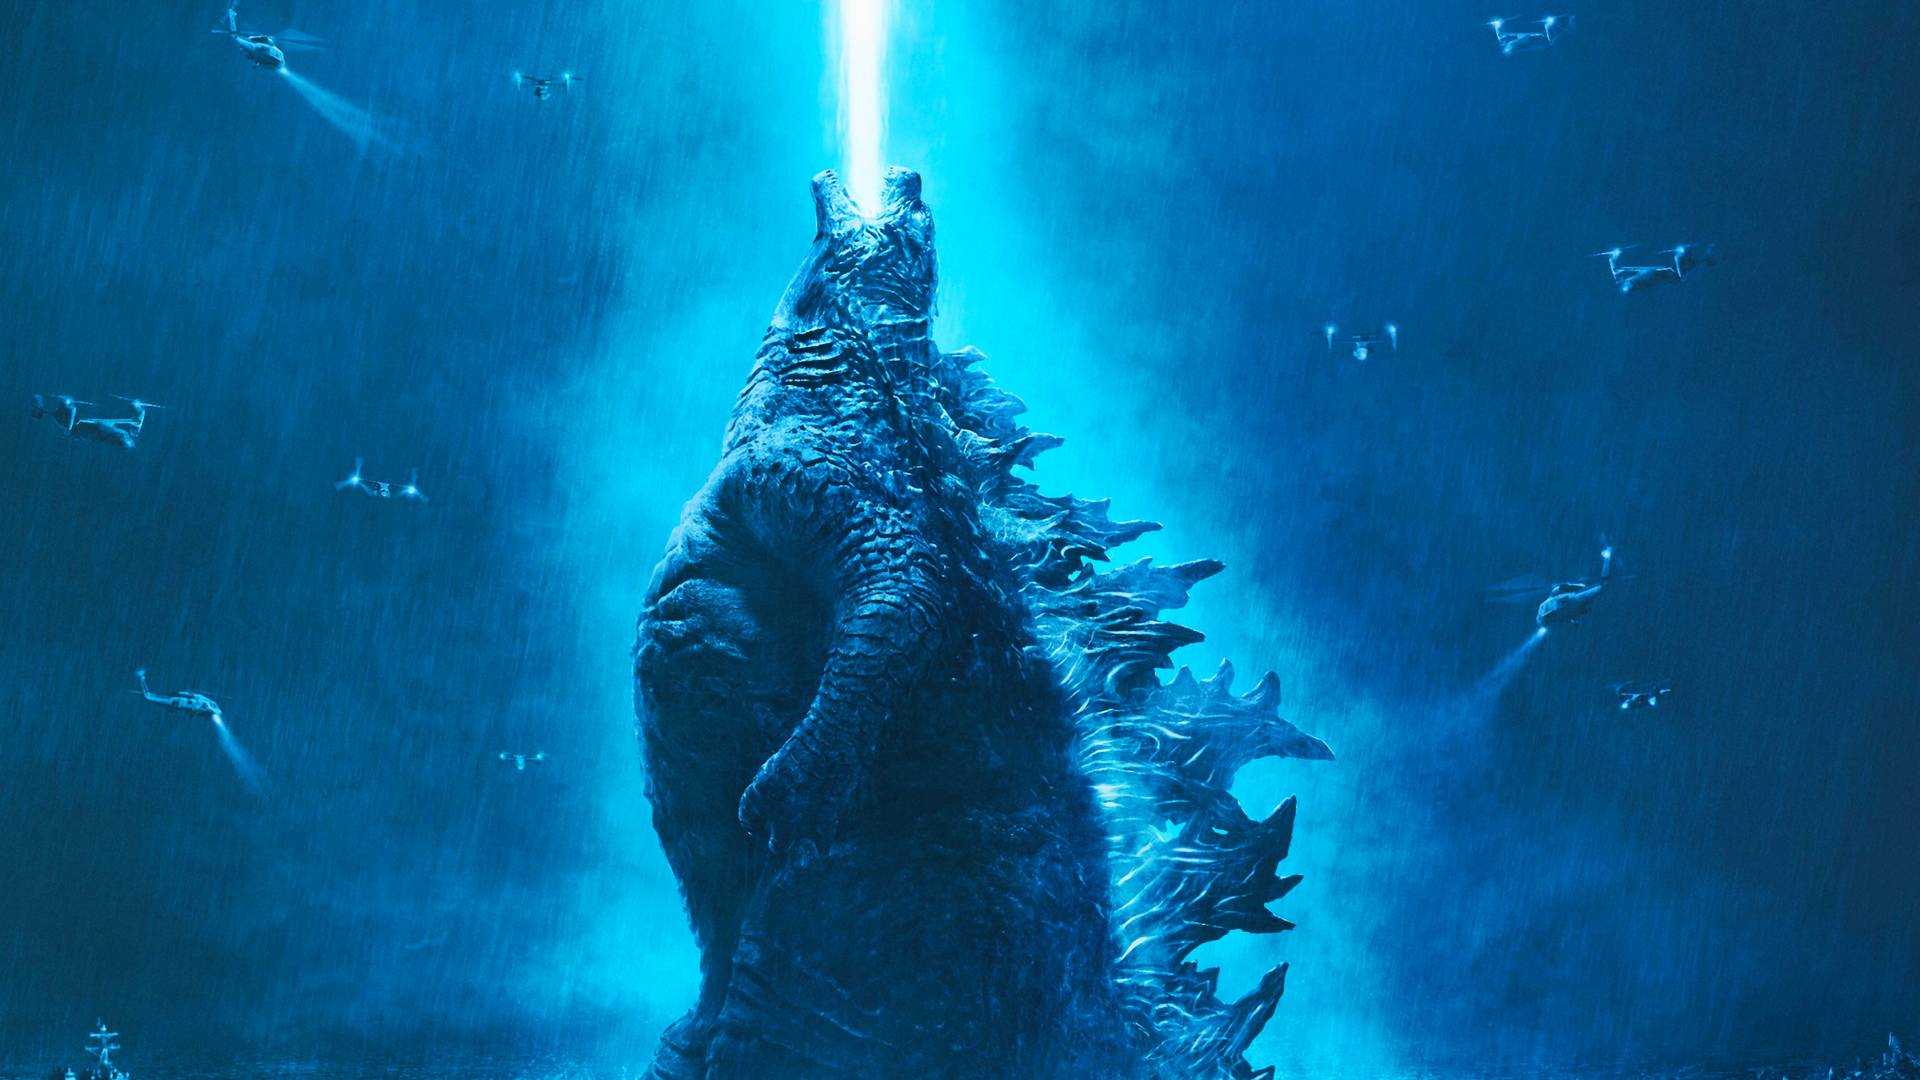 Godzilla elhozta a filmtörténelem eddigi legnagyobb pusztítását - kritika